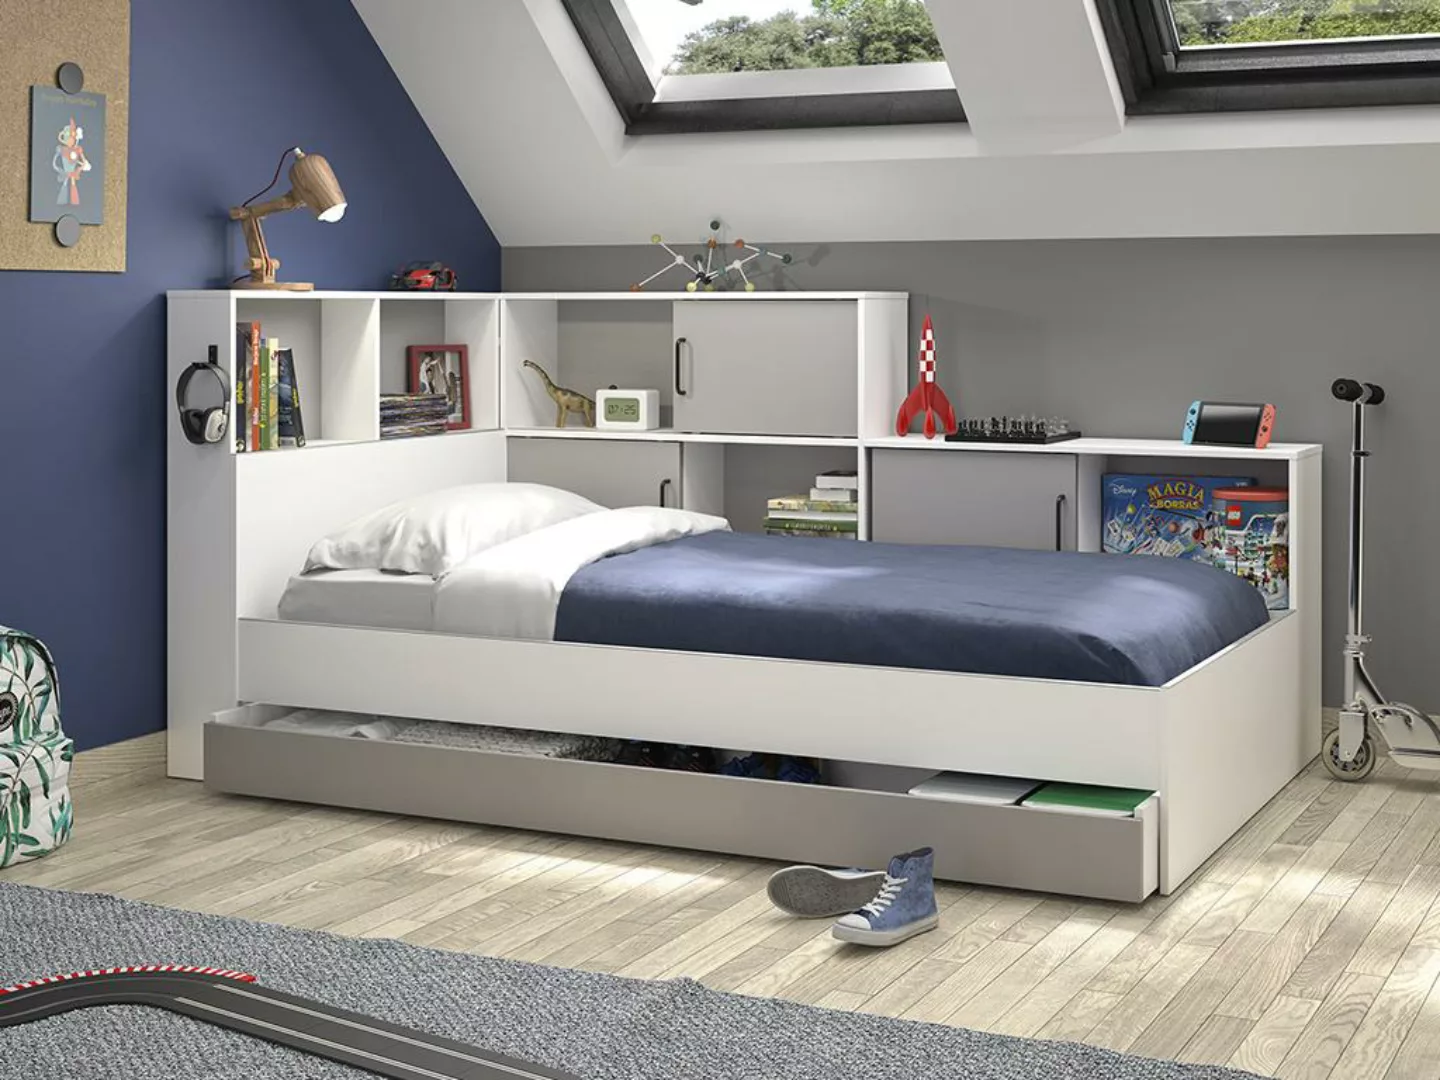 Bett mit Stauraum & Schublade - 90 x 200 cm - Weiß & Grau - ARMAND günstig online kaufen